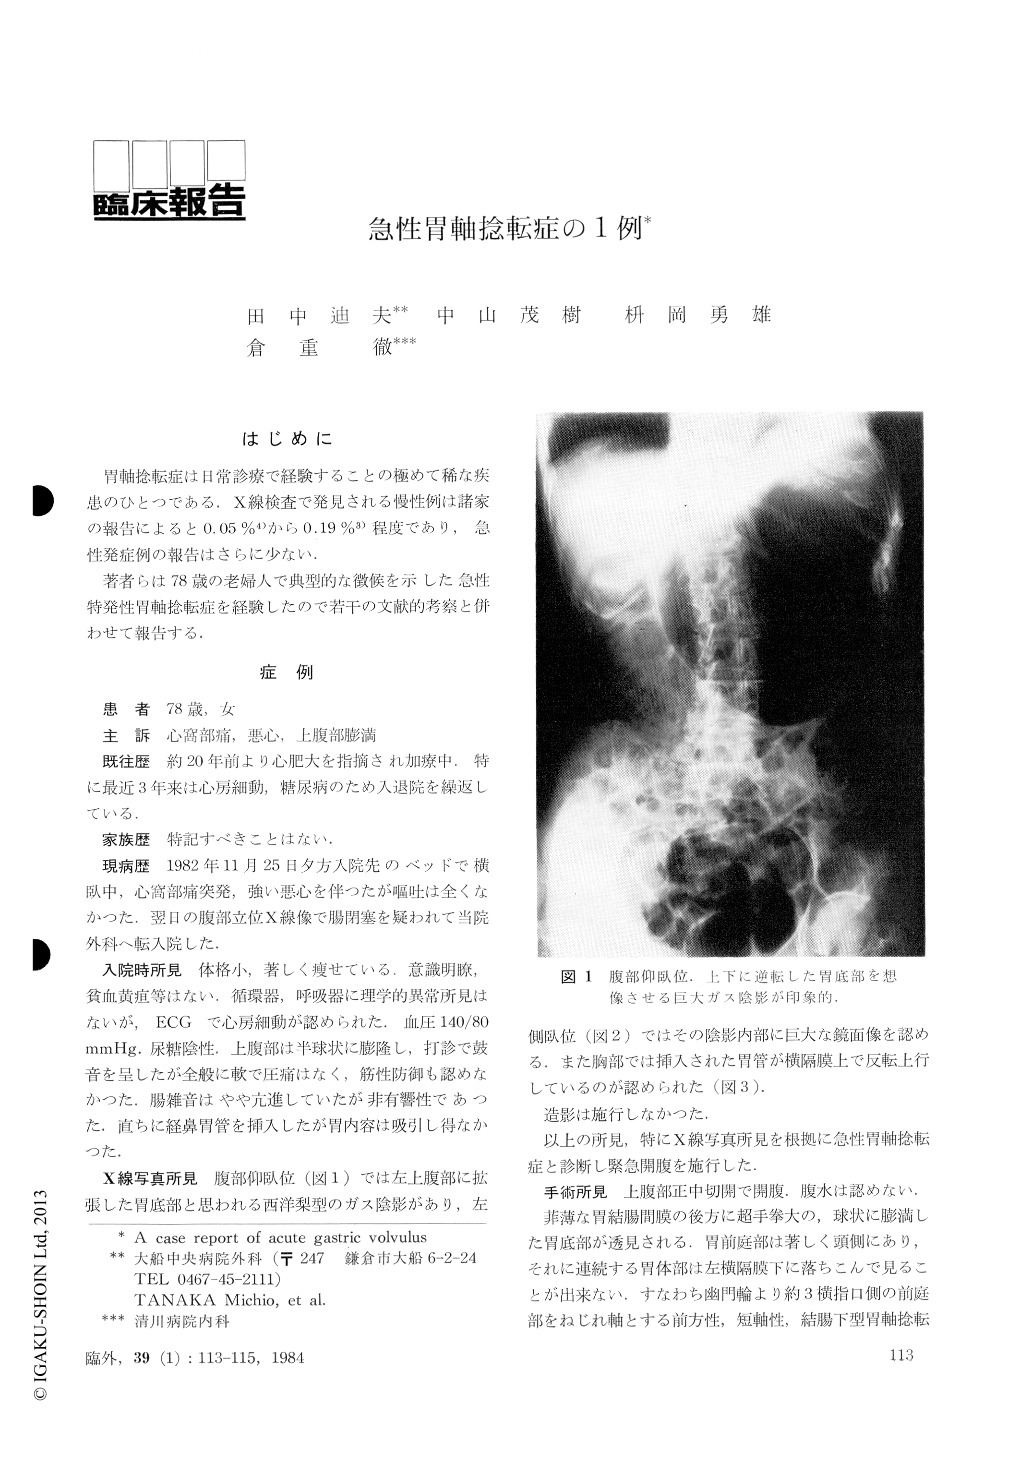 急性胃軸捻転症の1例 臨床外科 39巻1号 医書 Jp